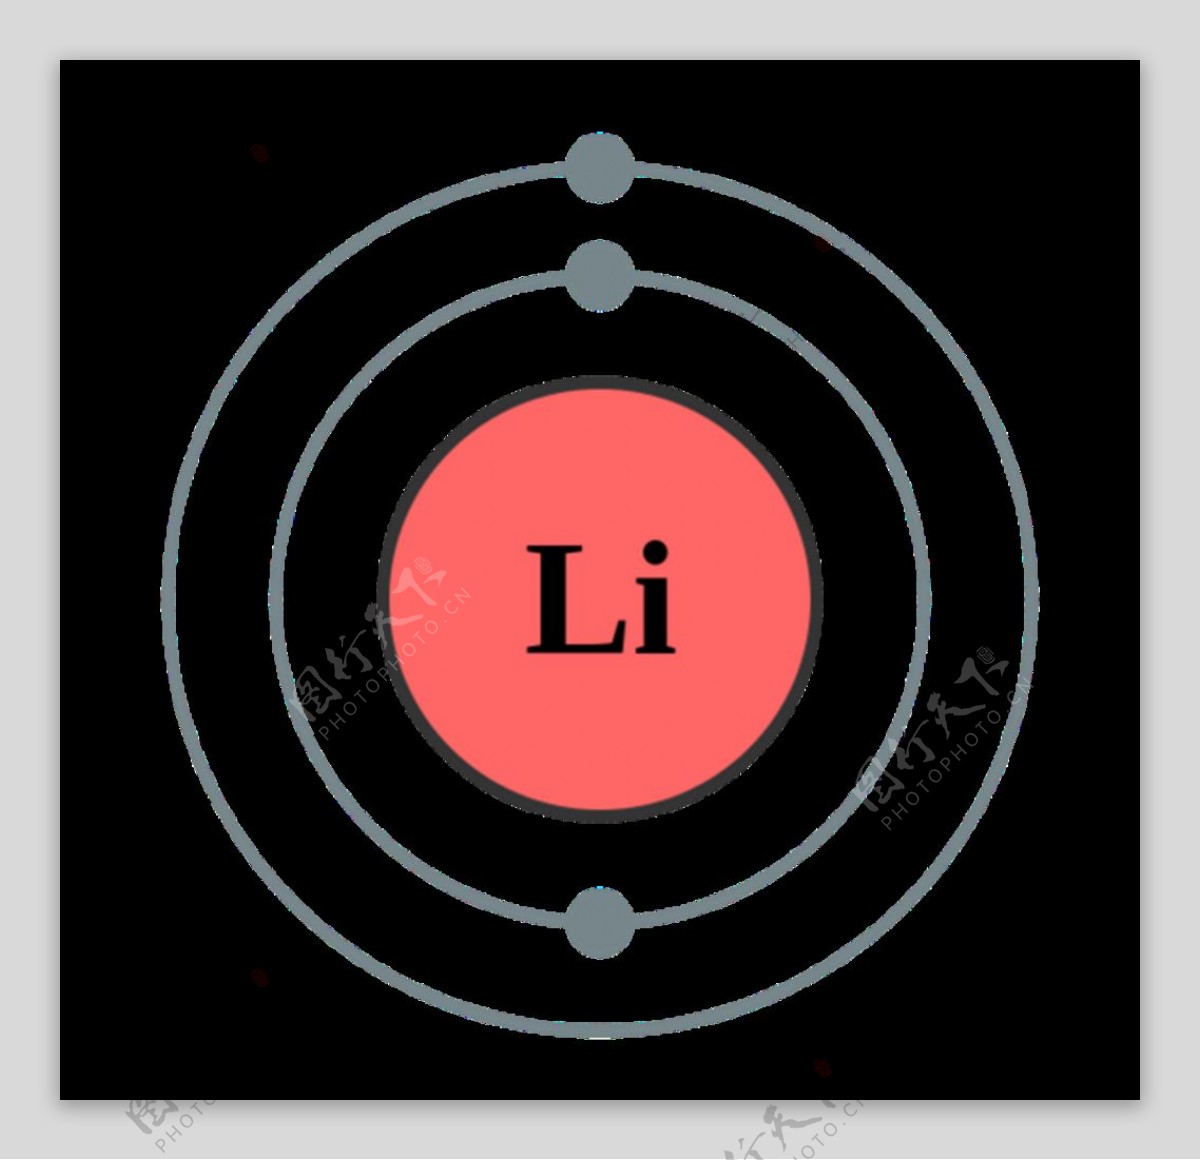 锂原子结构图片